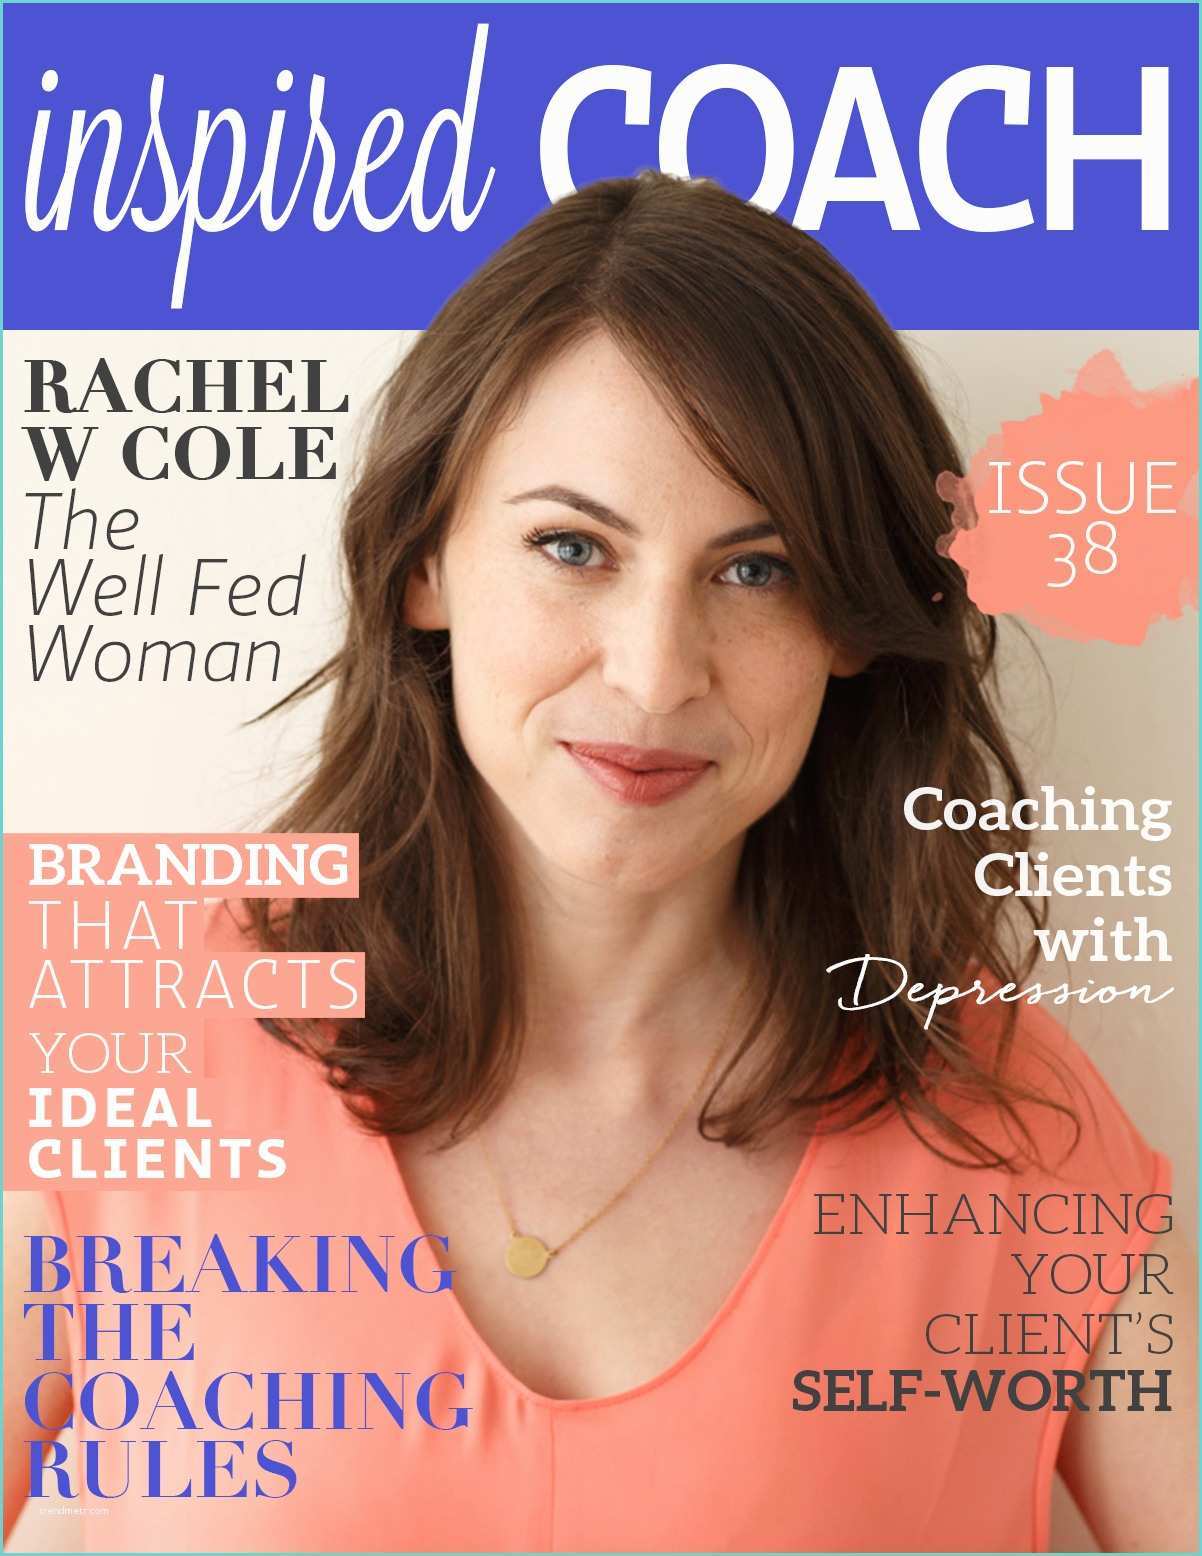 Beautiful You Coaching Academy Reviews Inspired Coach Magazine with Rachel W Cole Beautiful